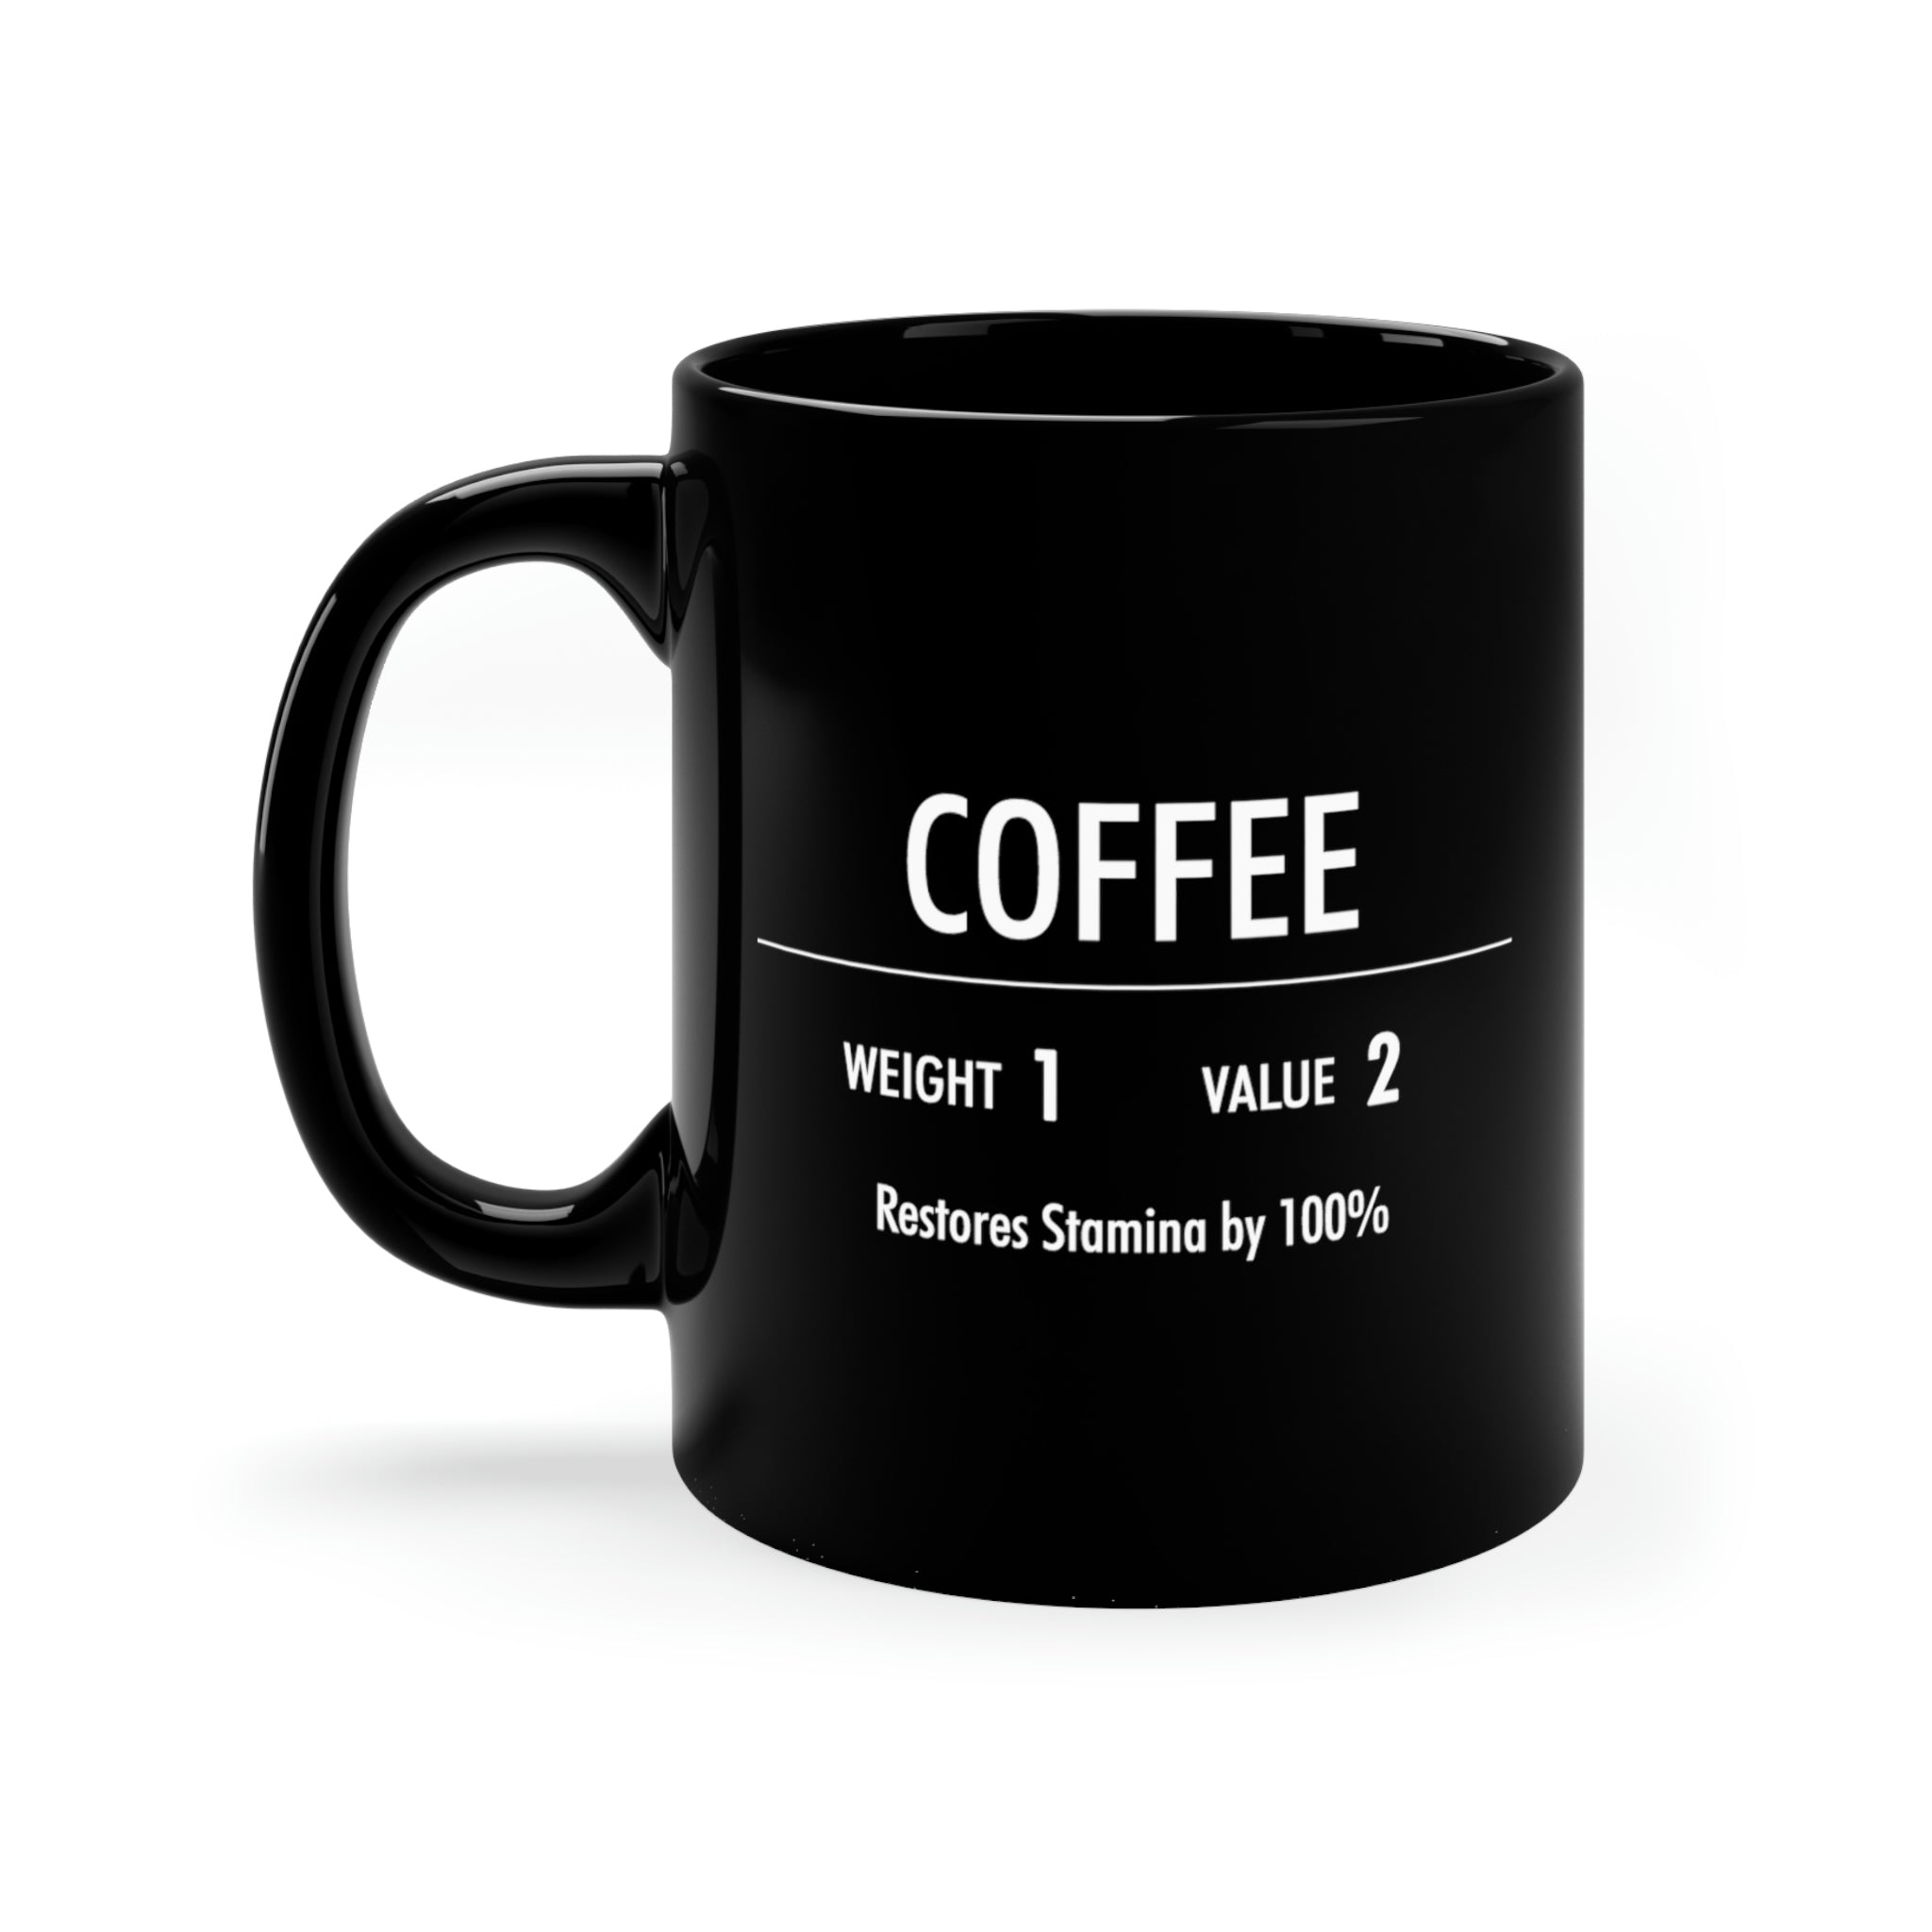 Coffee Mug, Skyrim Inspired, Gift for Gamers